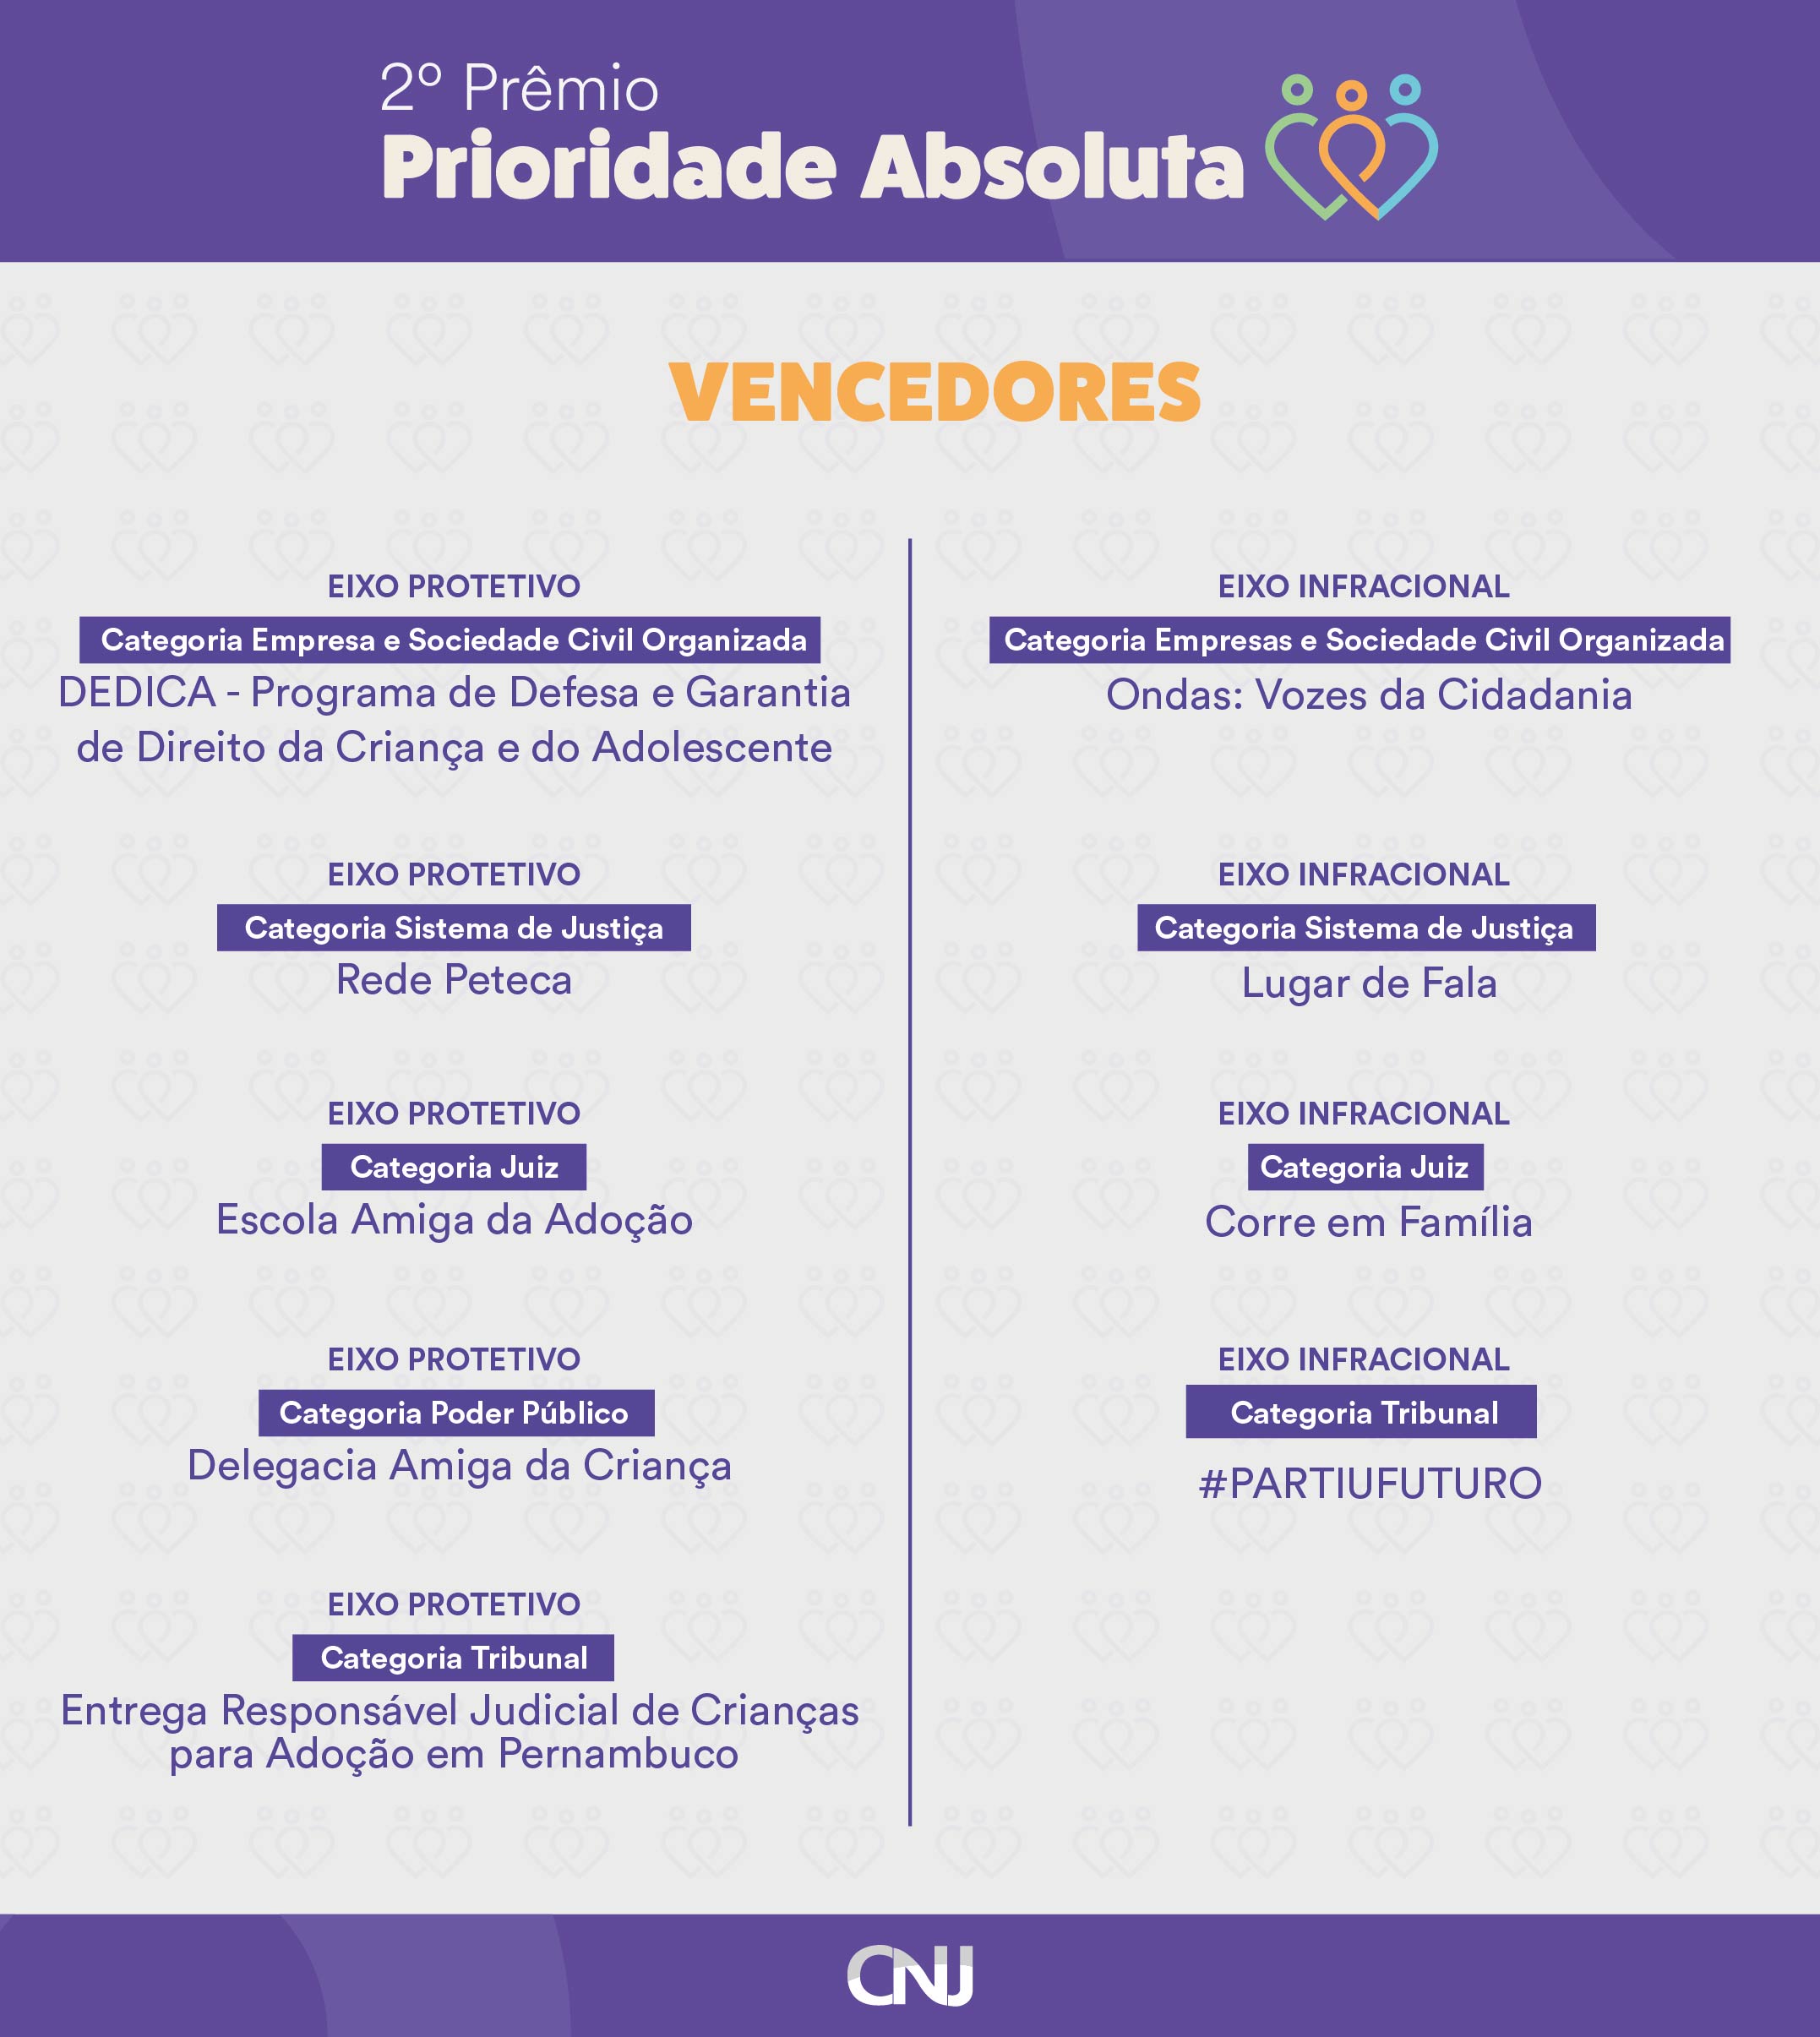 lista dos vencedores do 2º Prêmio Prioridade Absoluta 2022 em formato jpeg